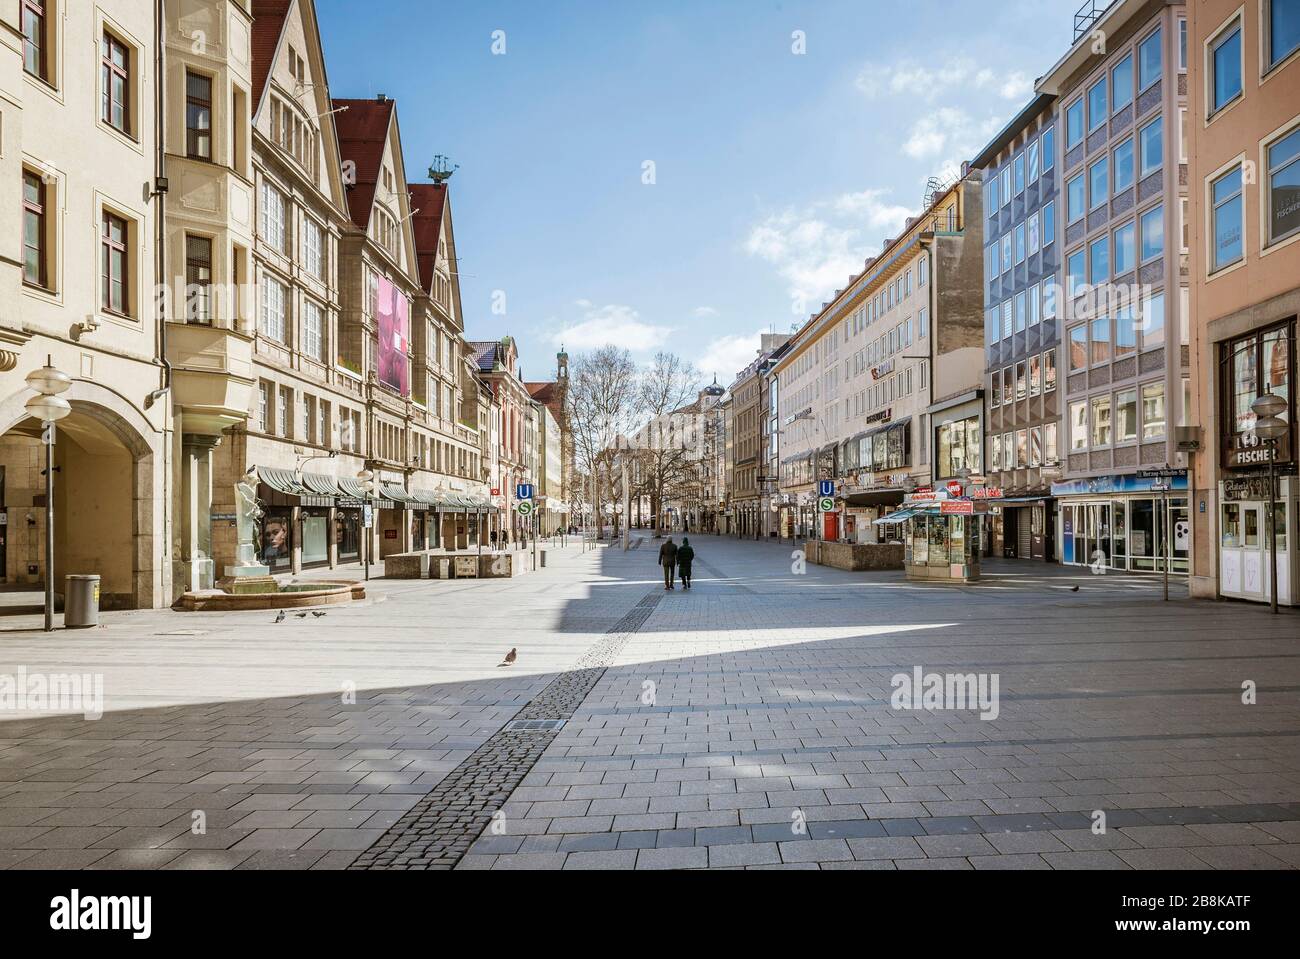 Baviera-Monaco-Germania, 22. März 2020: Poche persone camminano a Kaufingerstrasse a Monaco, che è di solito affollata ma rimane vuota a causa della nuova c Foto Stock